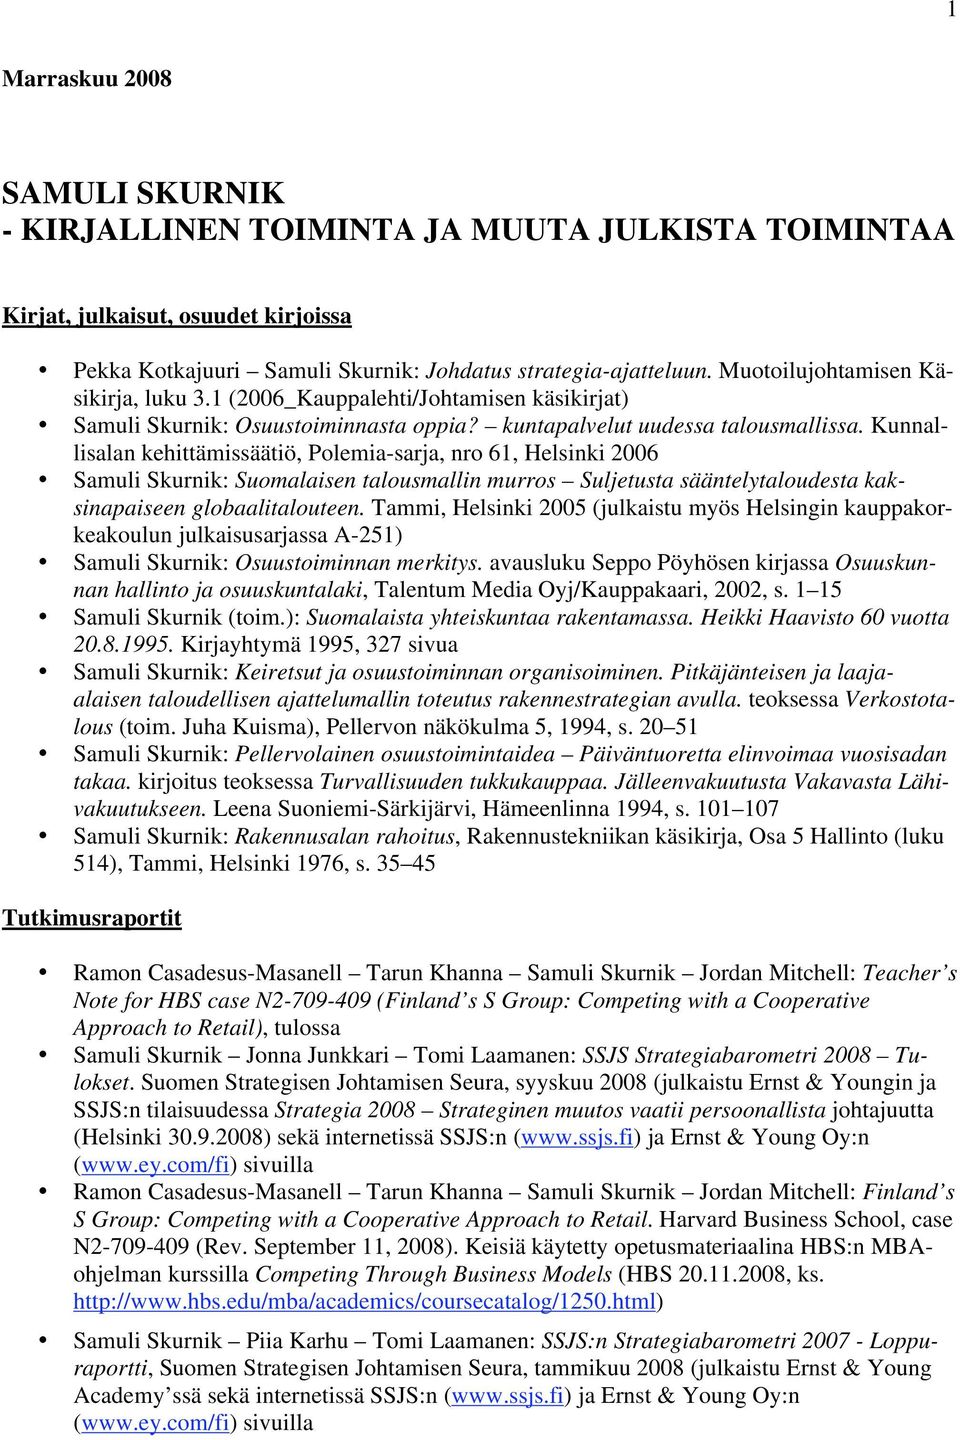 Kunnallisalan kehittämissäätiö, Polemia-sarja, nro 61, Helsinki 2006 Samuli Skurnik: Suomalaisen talousmallin murros Suljetusta sääntelytaloudesta kaksinapaiseen globaalitalouteen.